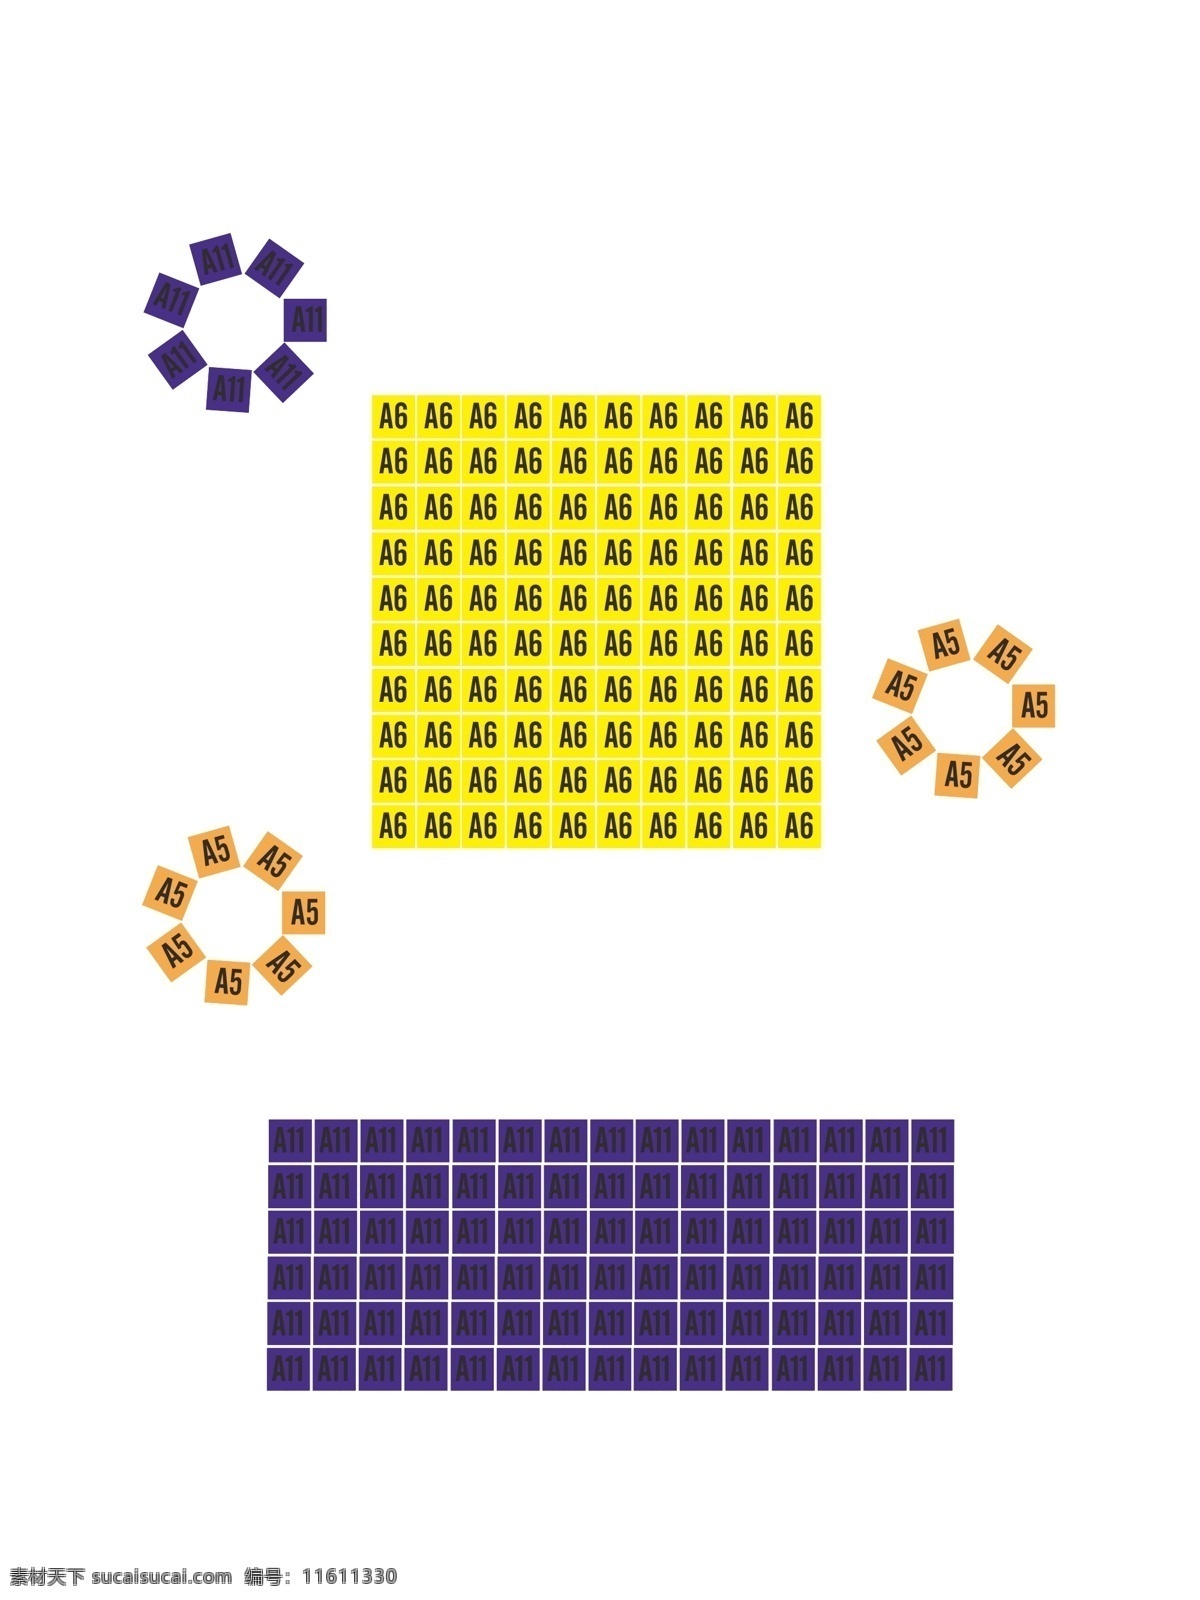 放 格子 正方形 长方形 创意 矢量 图形 放格子 创意矢量图形 海报元素 儿童海报元素 方格子图形